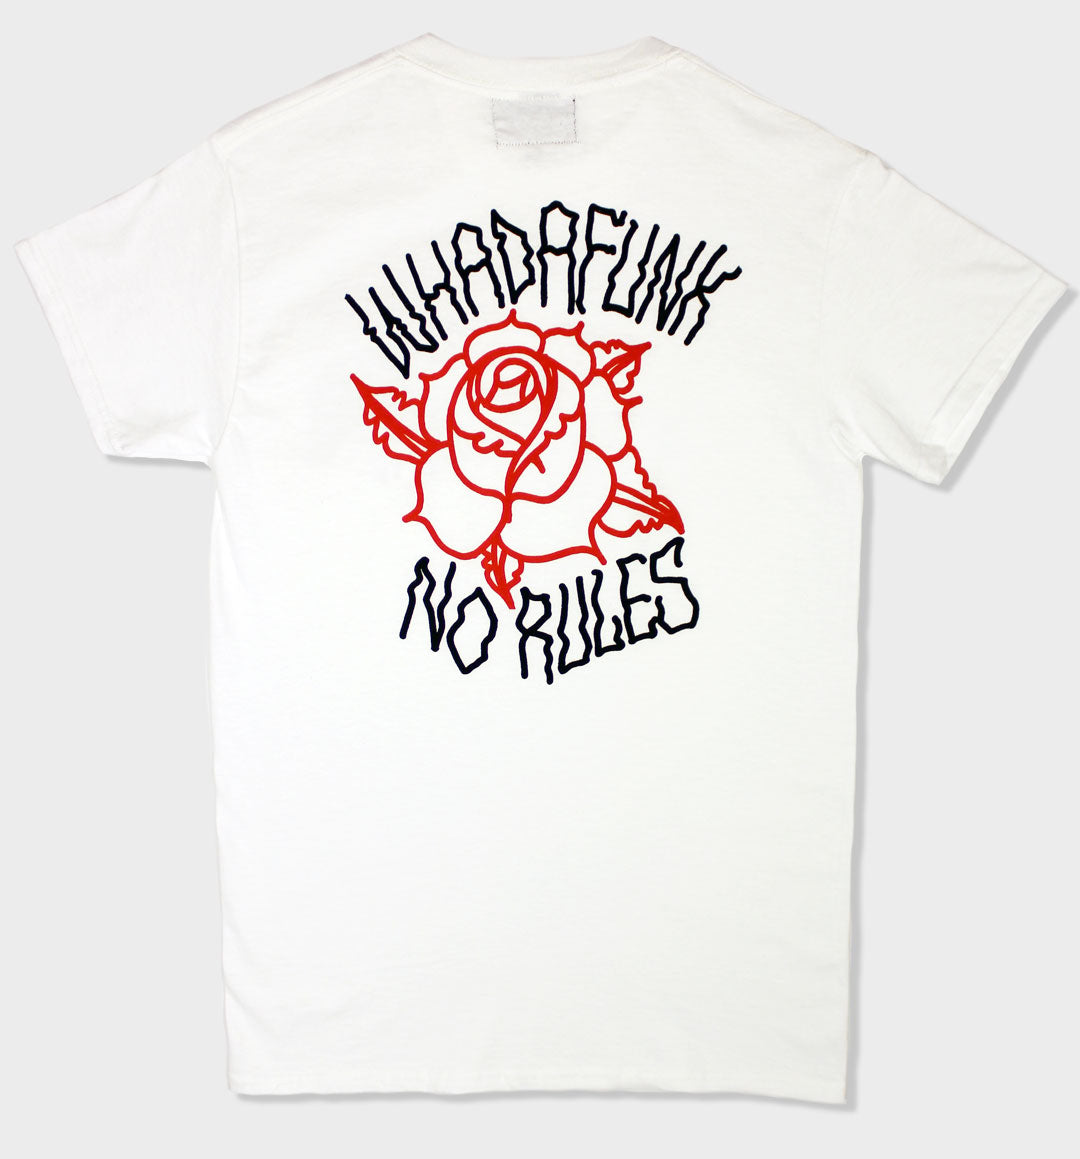 Whadafunk No Rules Rose Tshirt